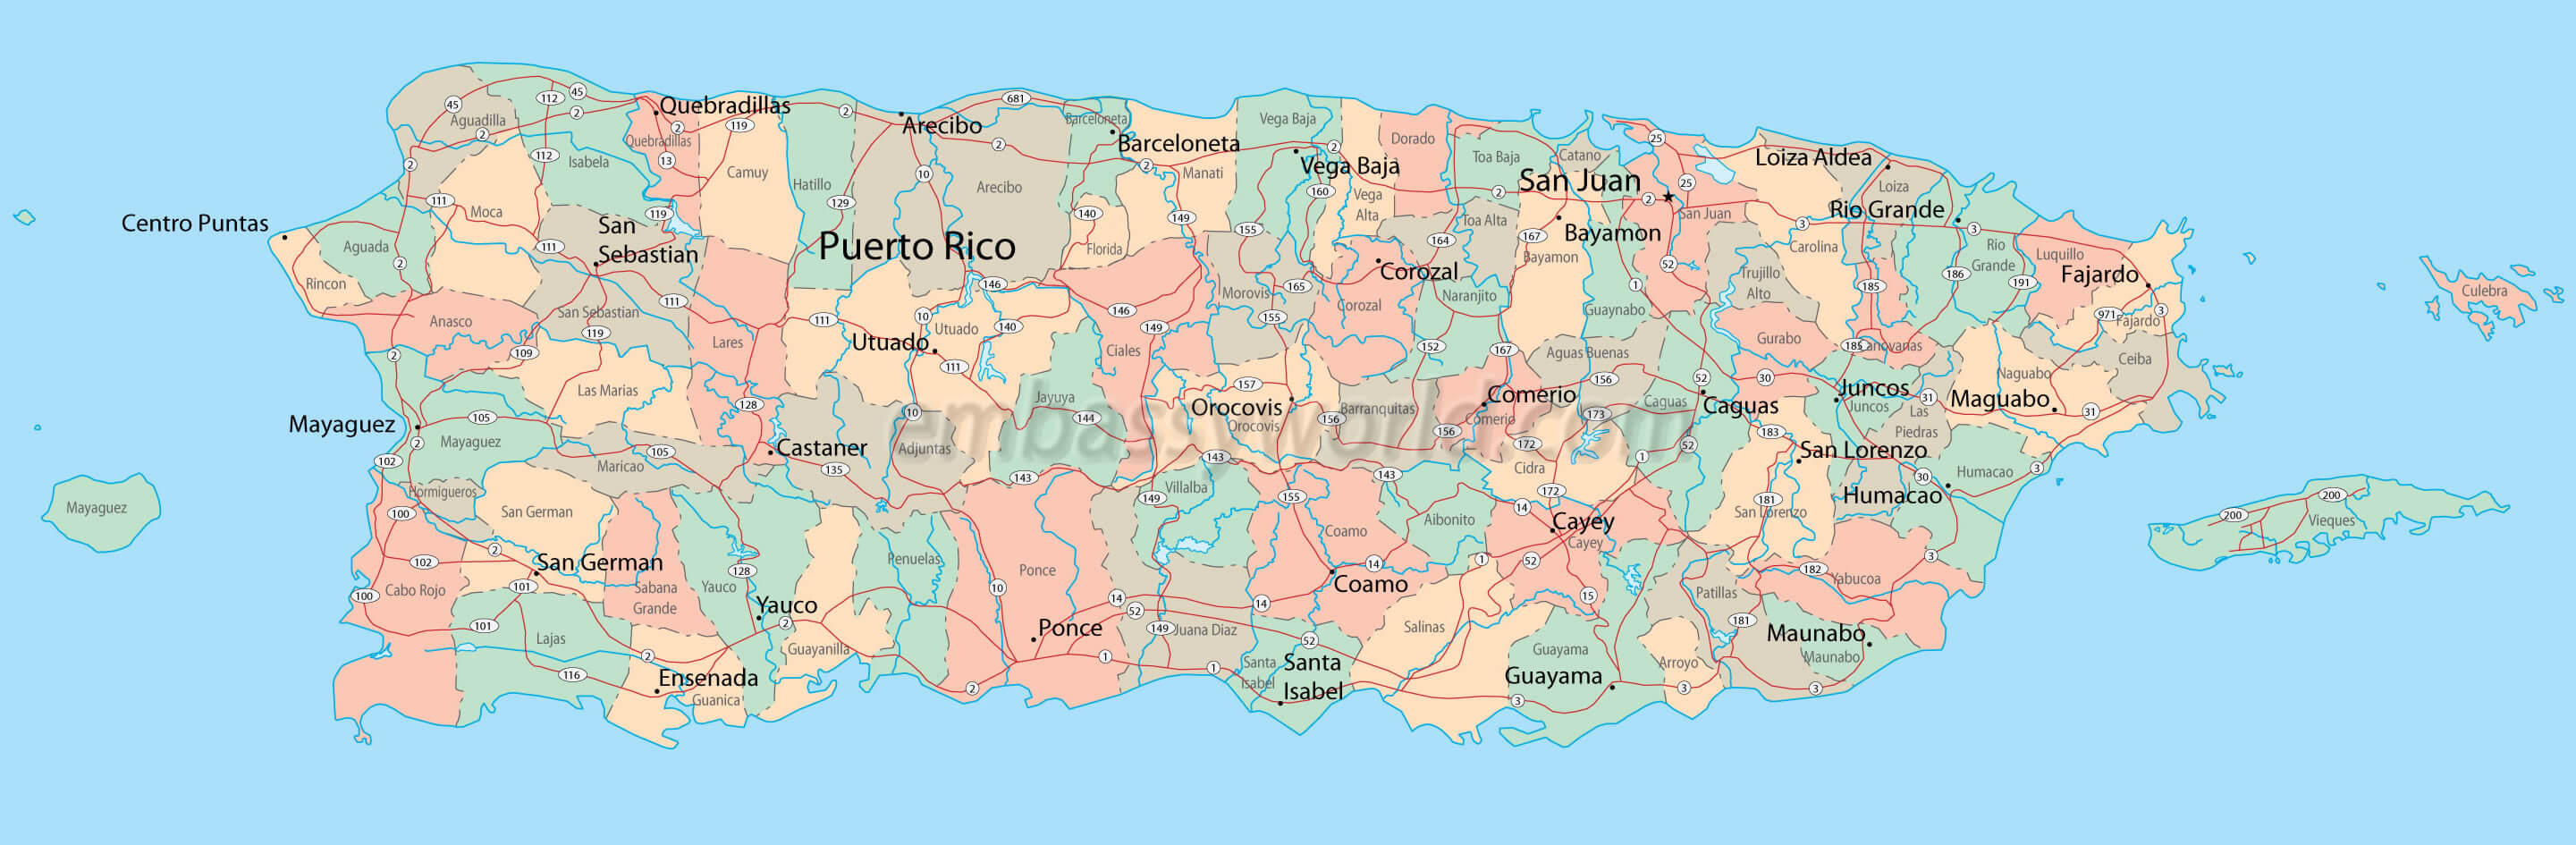 stadte karte von puerto rico